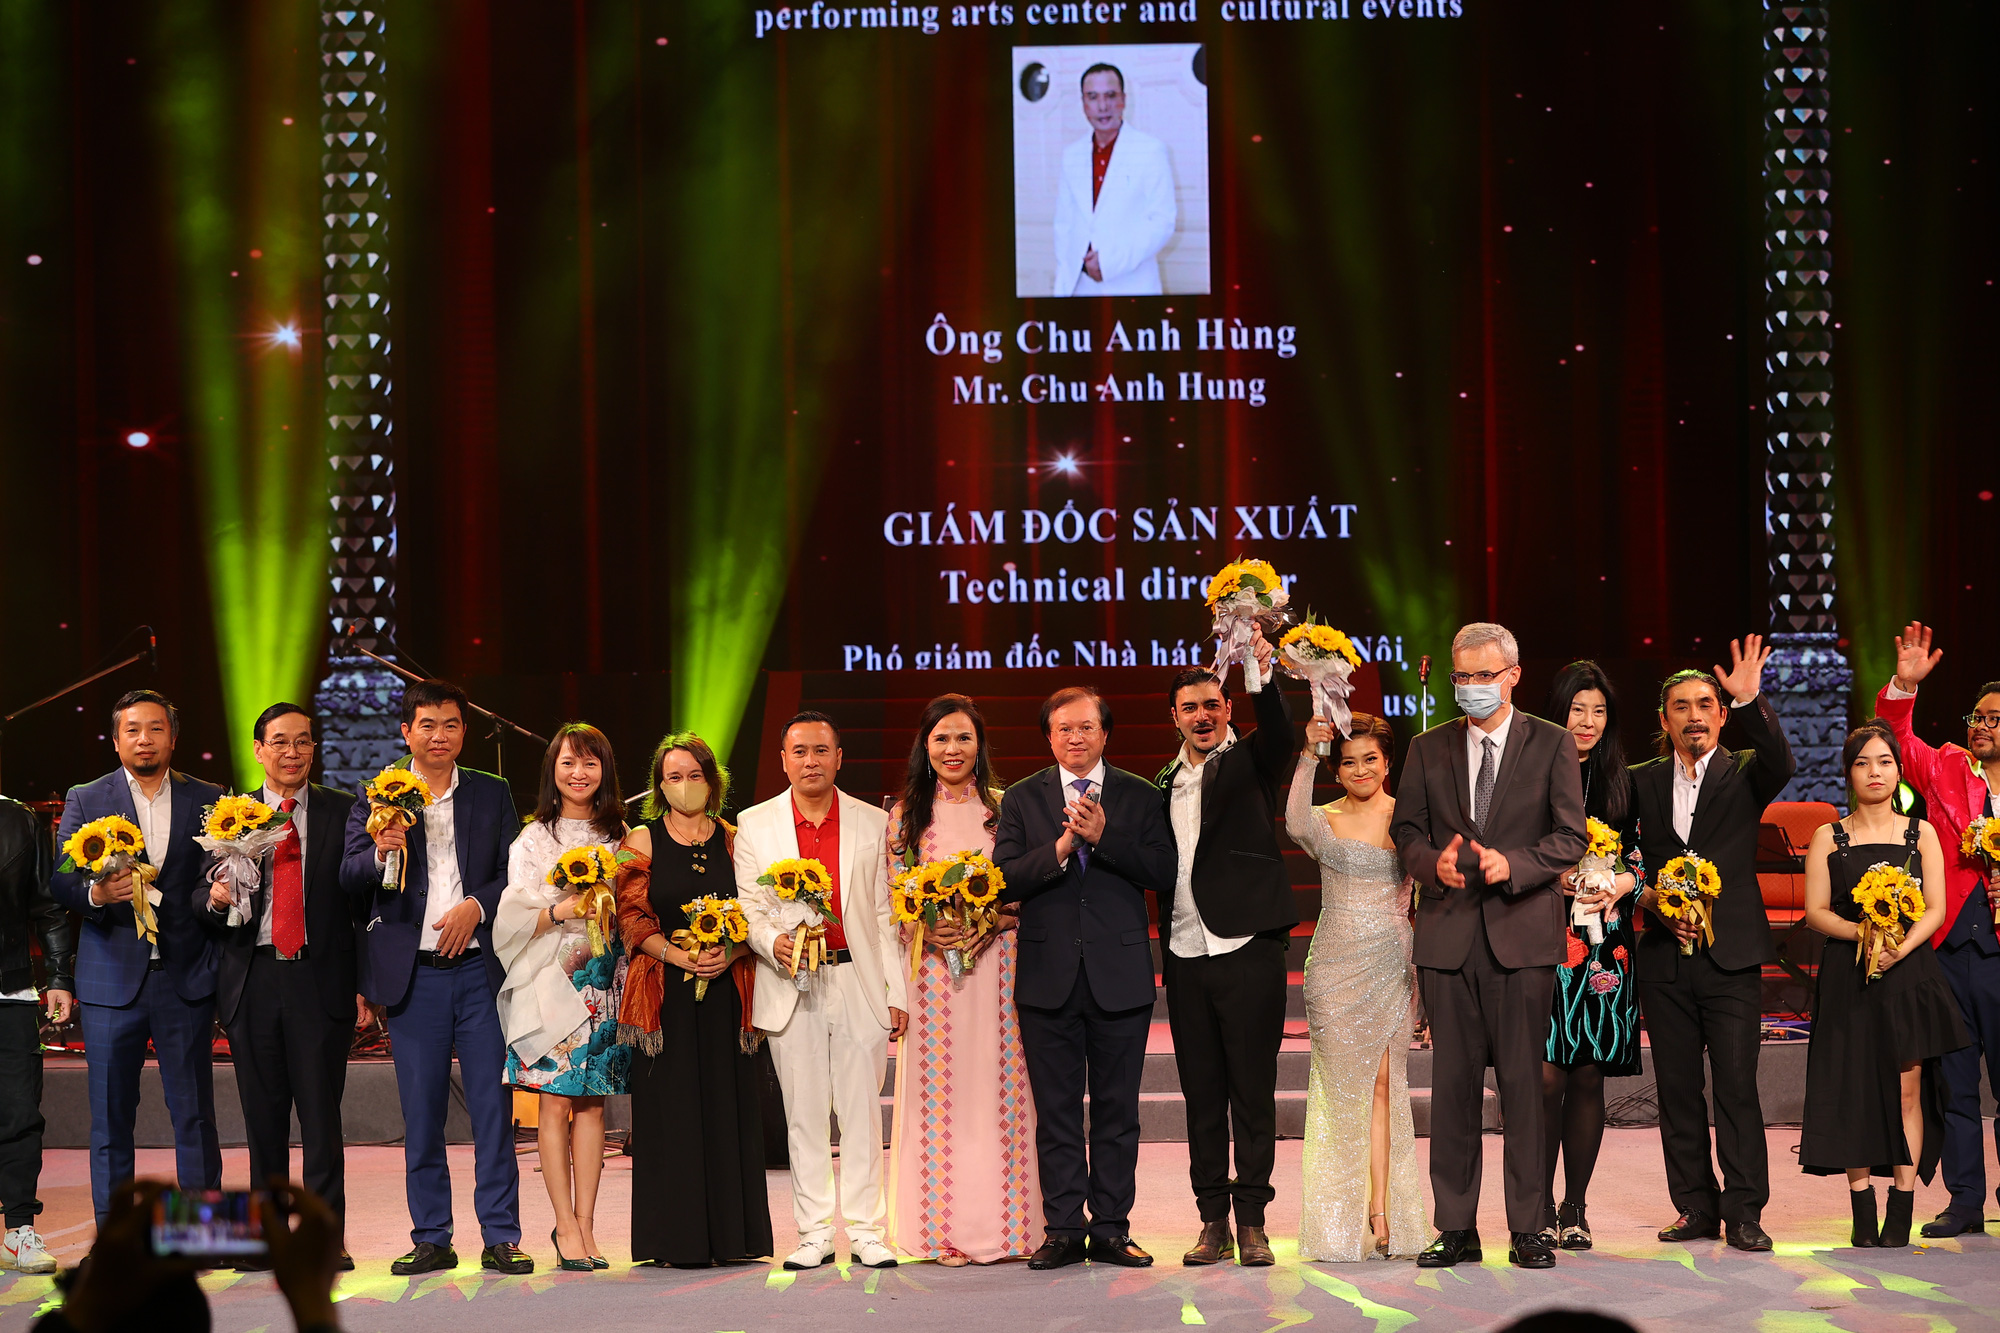 Hòa nhạc Việt Nam-Pháp kỷ niệm 110 năm thành lập Nhà hát Lớn - Ảnh 17.